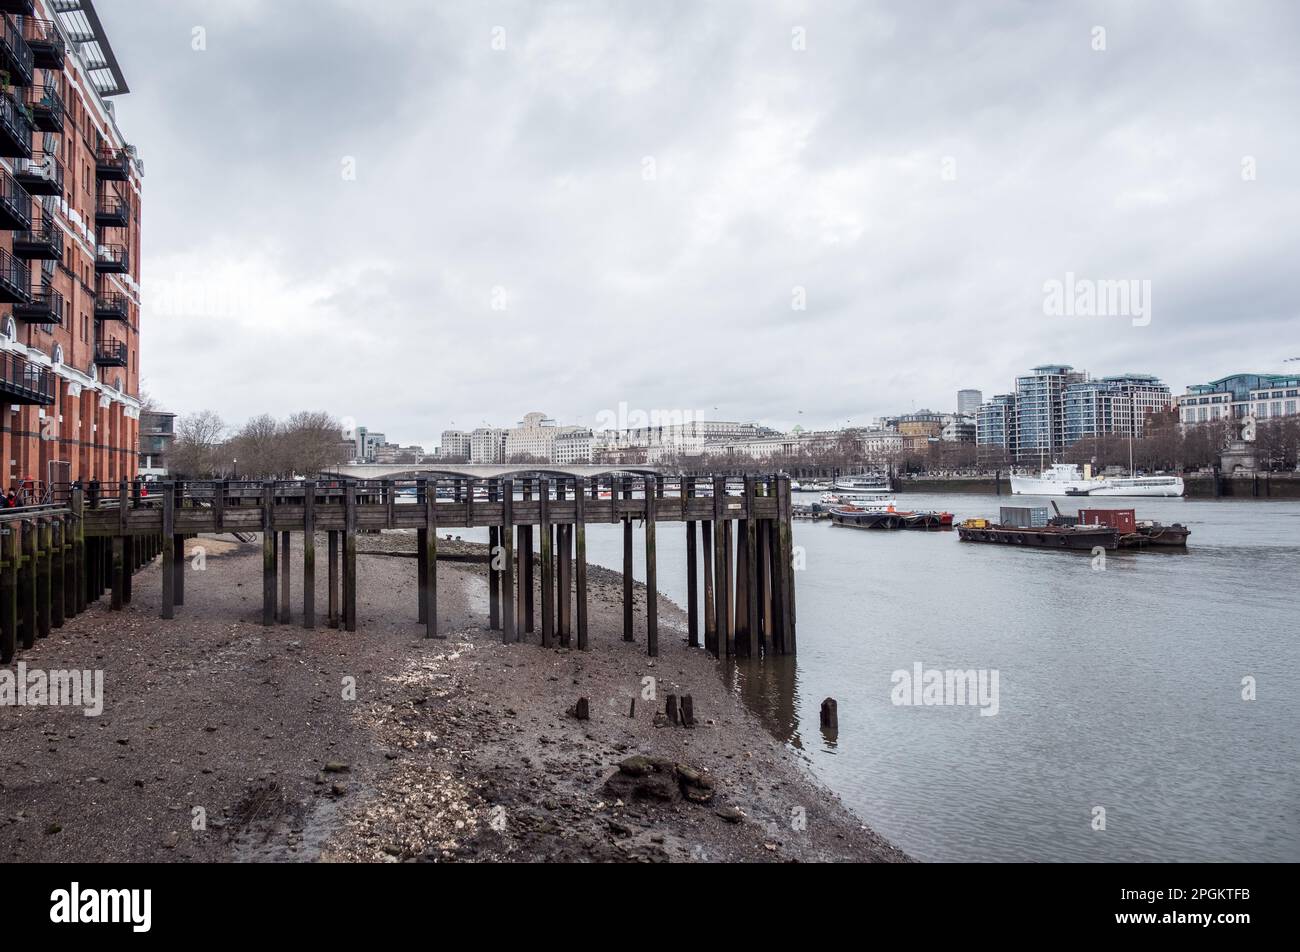 Vista della spiaggia del Tamigi presso l'oxo Tower Wharf, Londra. REGNO UNITO. Foto Stock